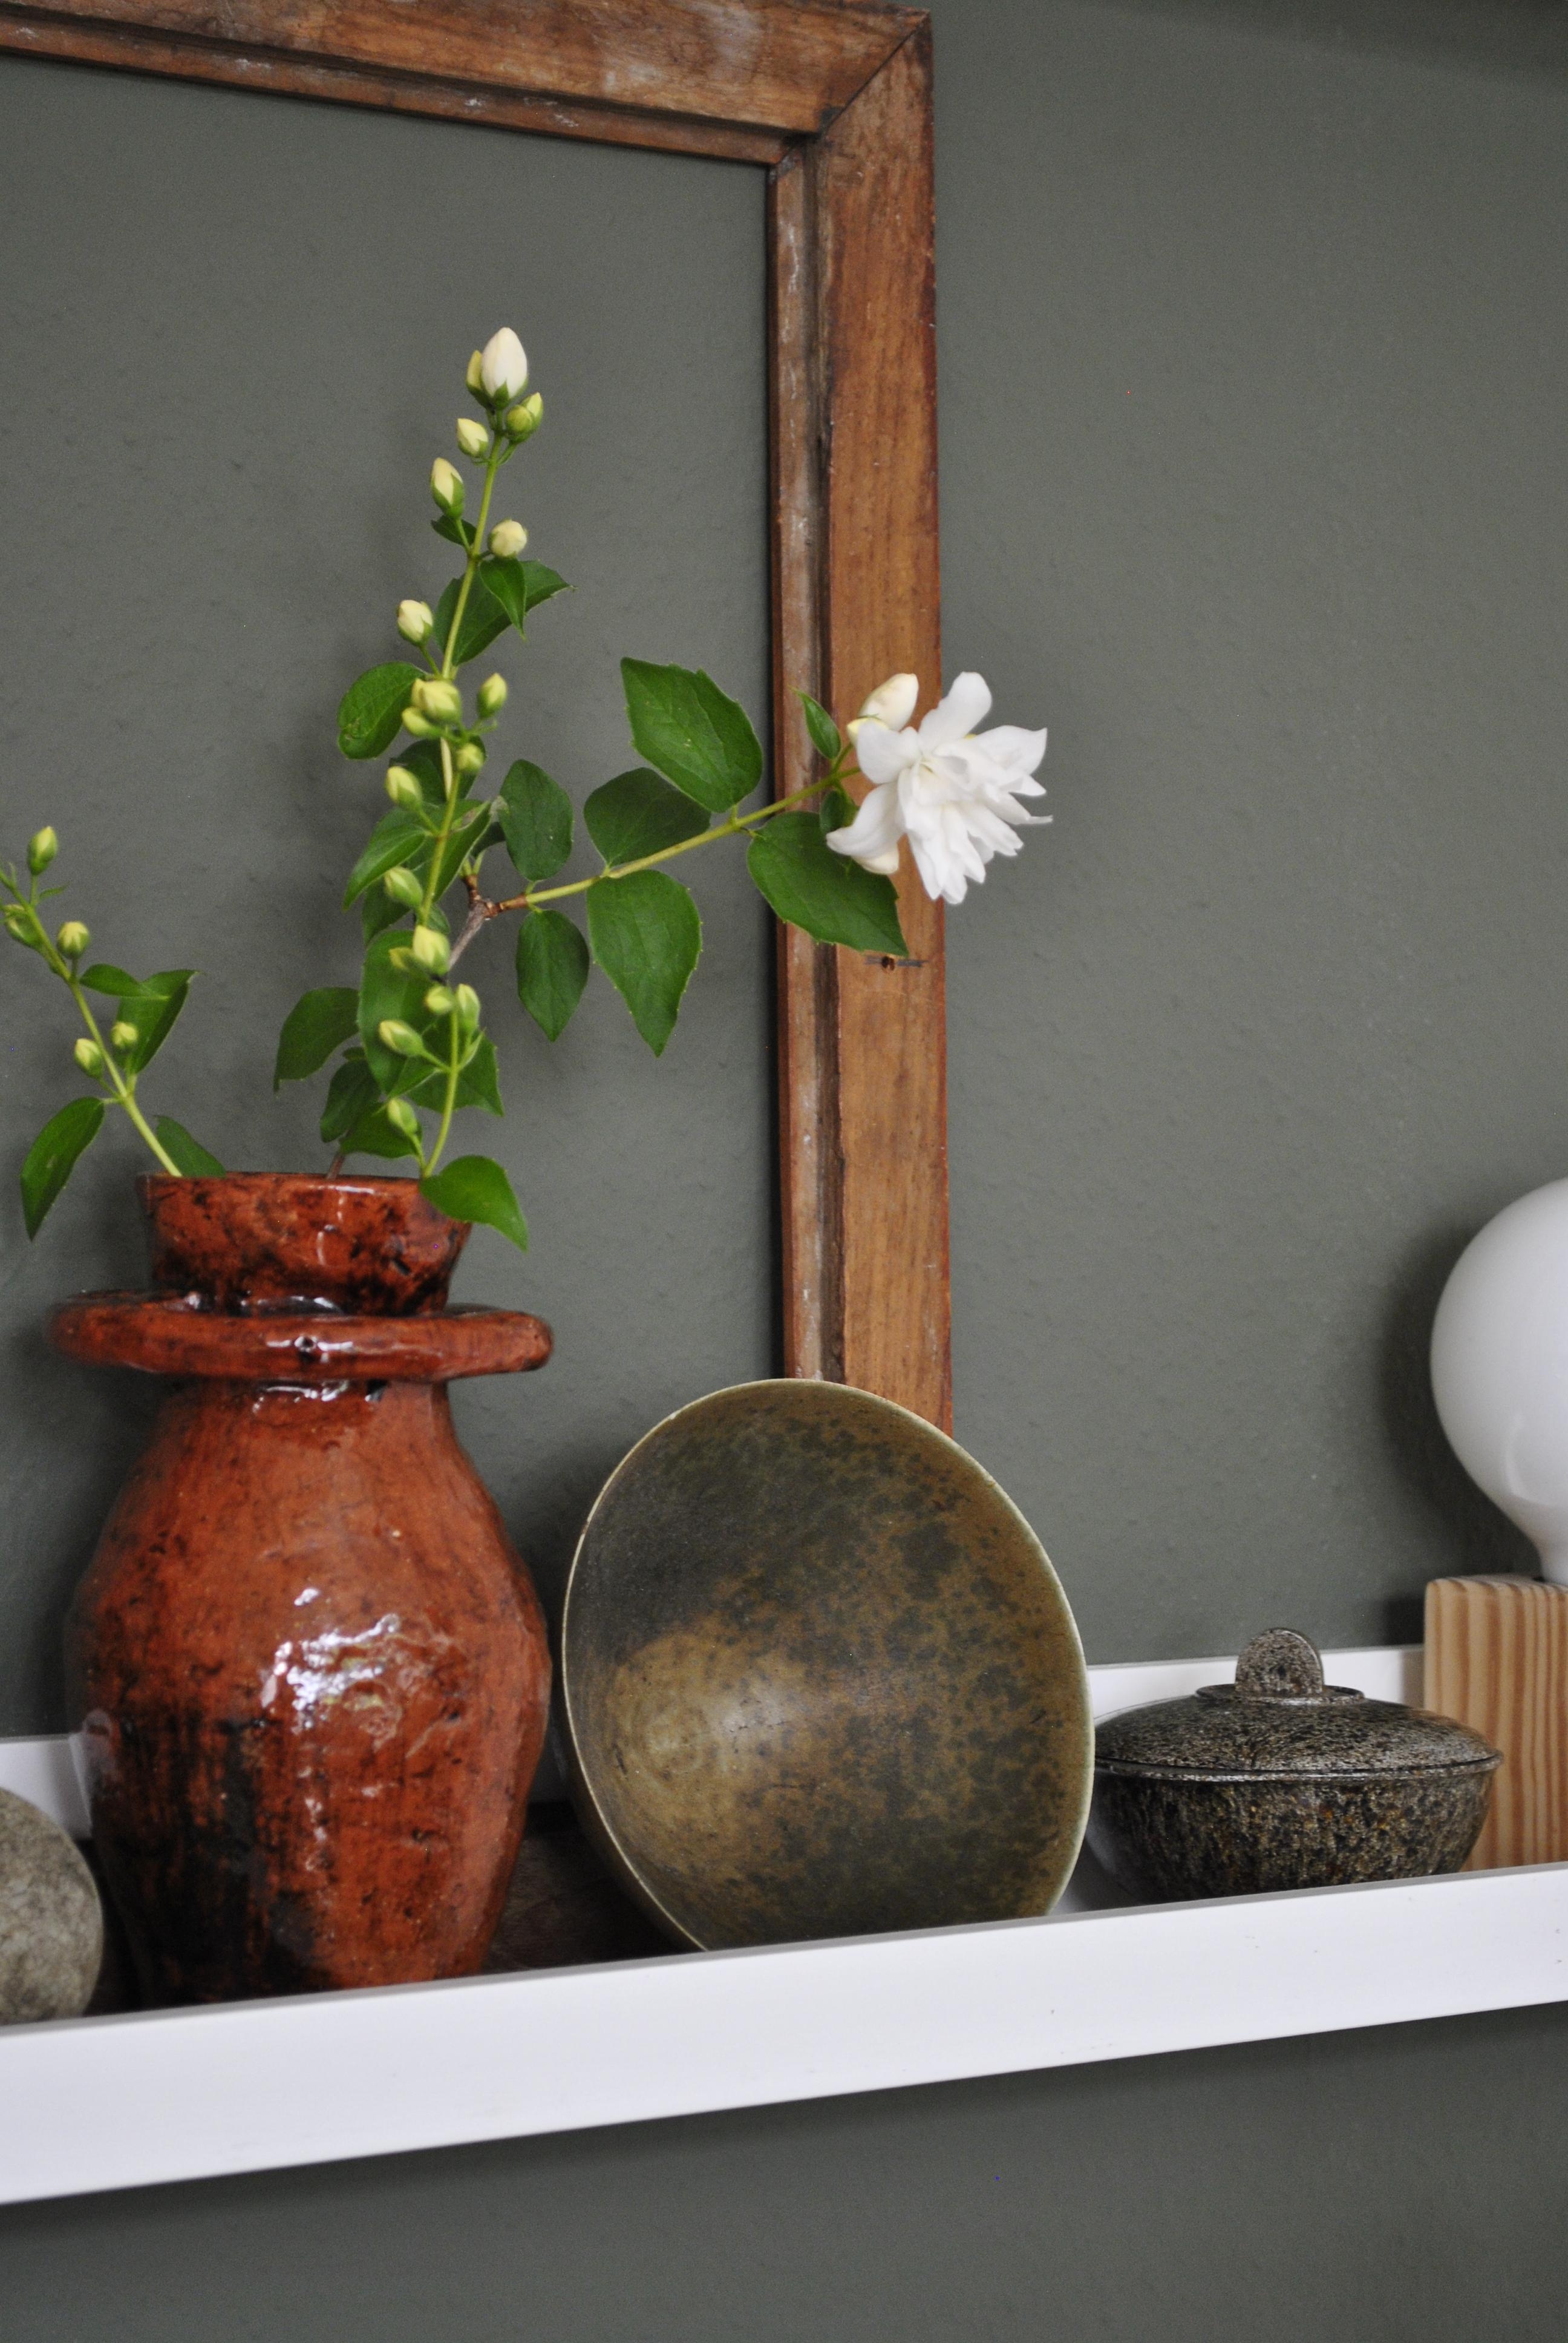 Die neue #vase hat auch ein Plätzchen gefunden #wohnzimmer #regal #bilderleiste